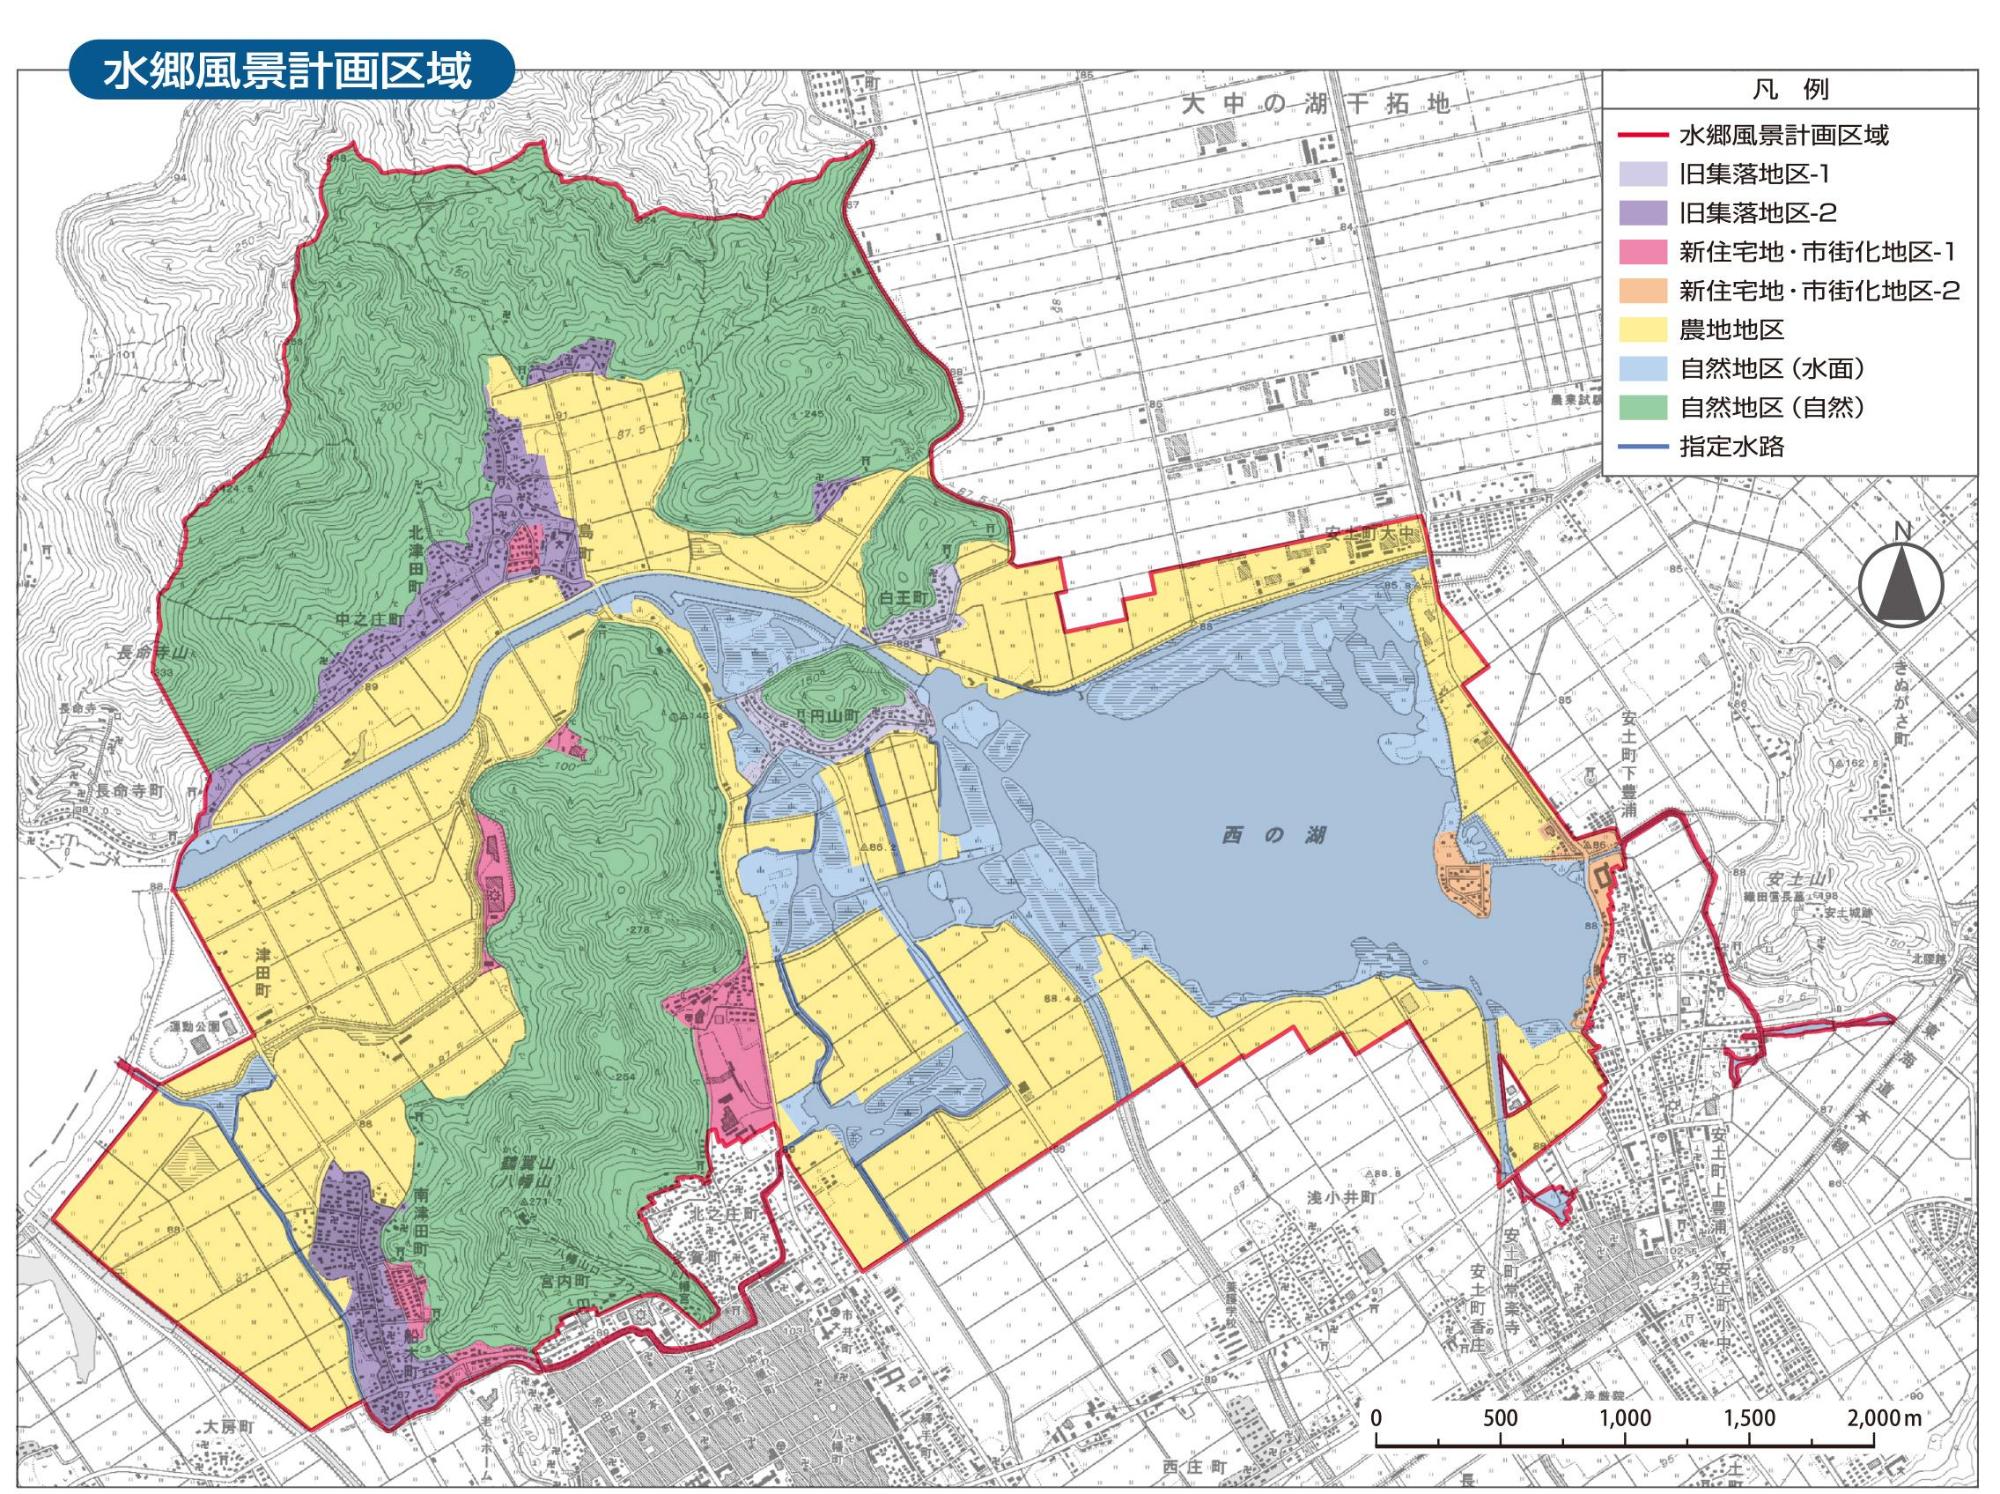 景観法に基づいた水郷風景計画により、近江八幡市を地区ごとに色分けした地図